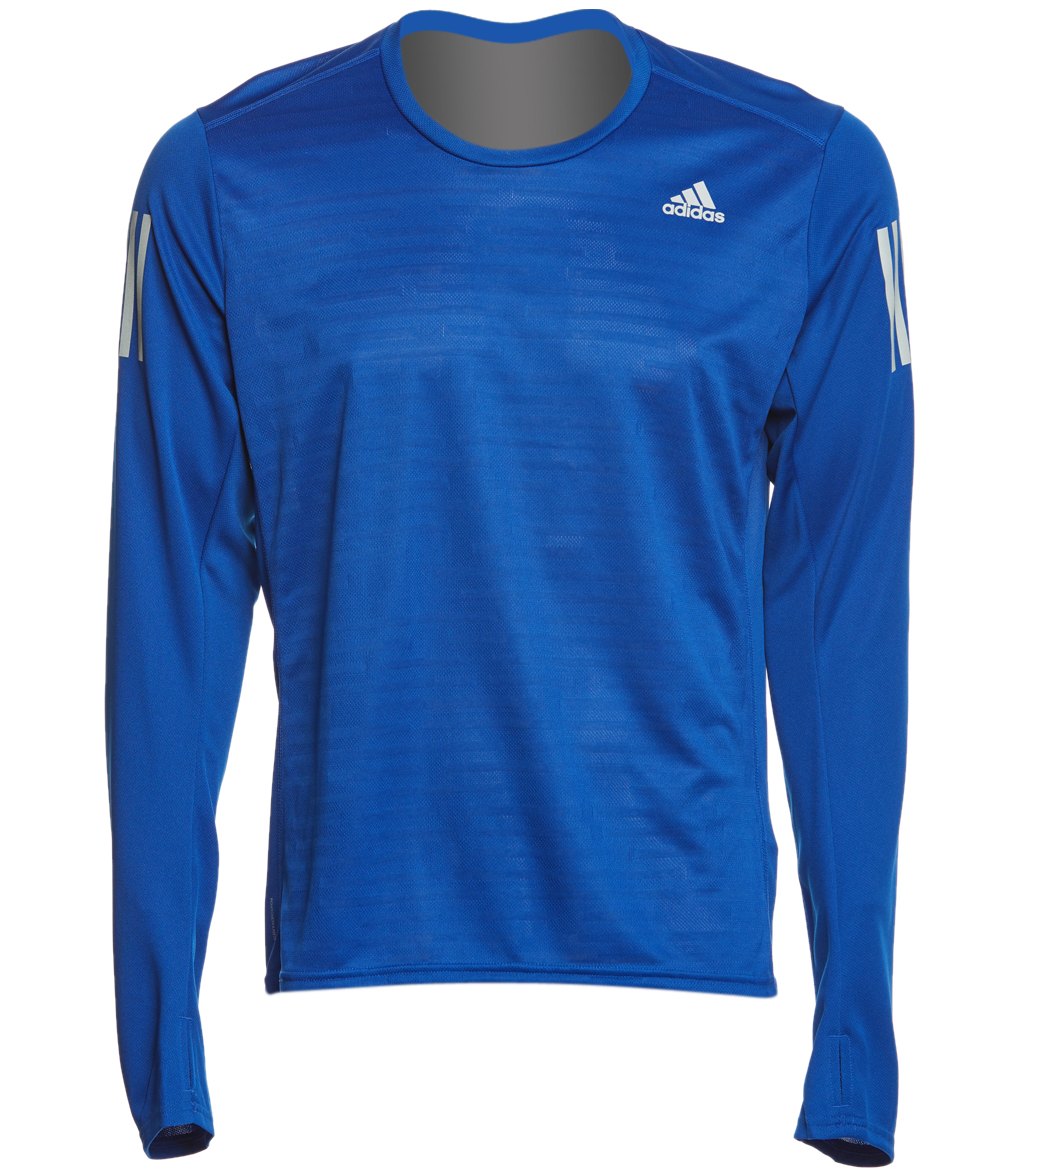 Adidas Outdoor Men's Response Long Sleeve Run Tee Shirt - Collegiate Royal Xxl Polyester - Swimoutlet.com